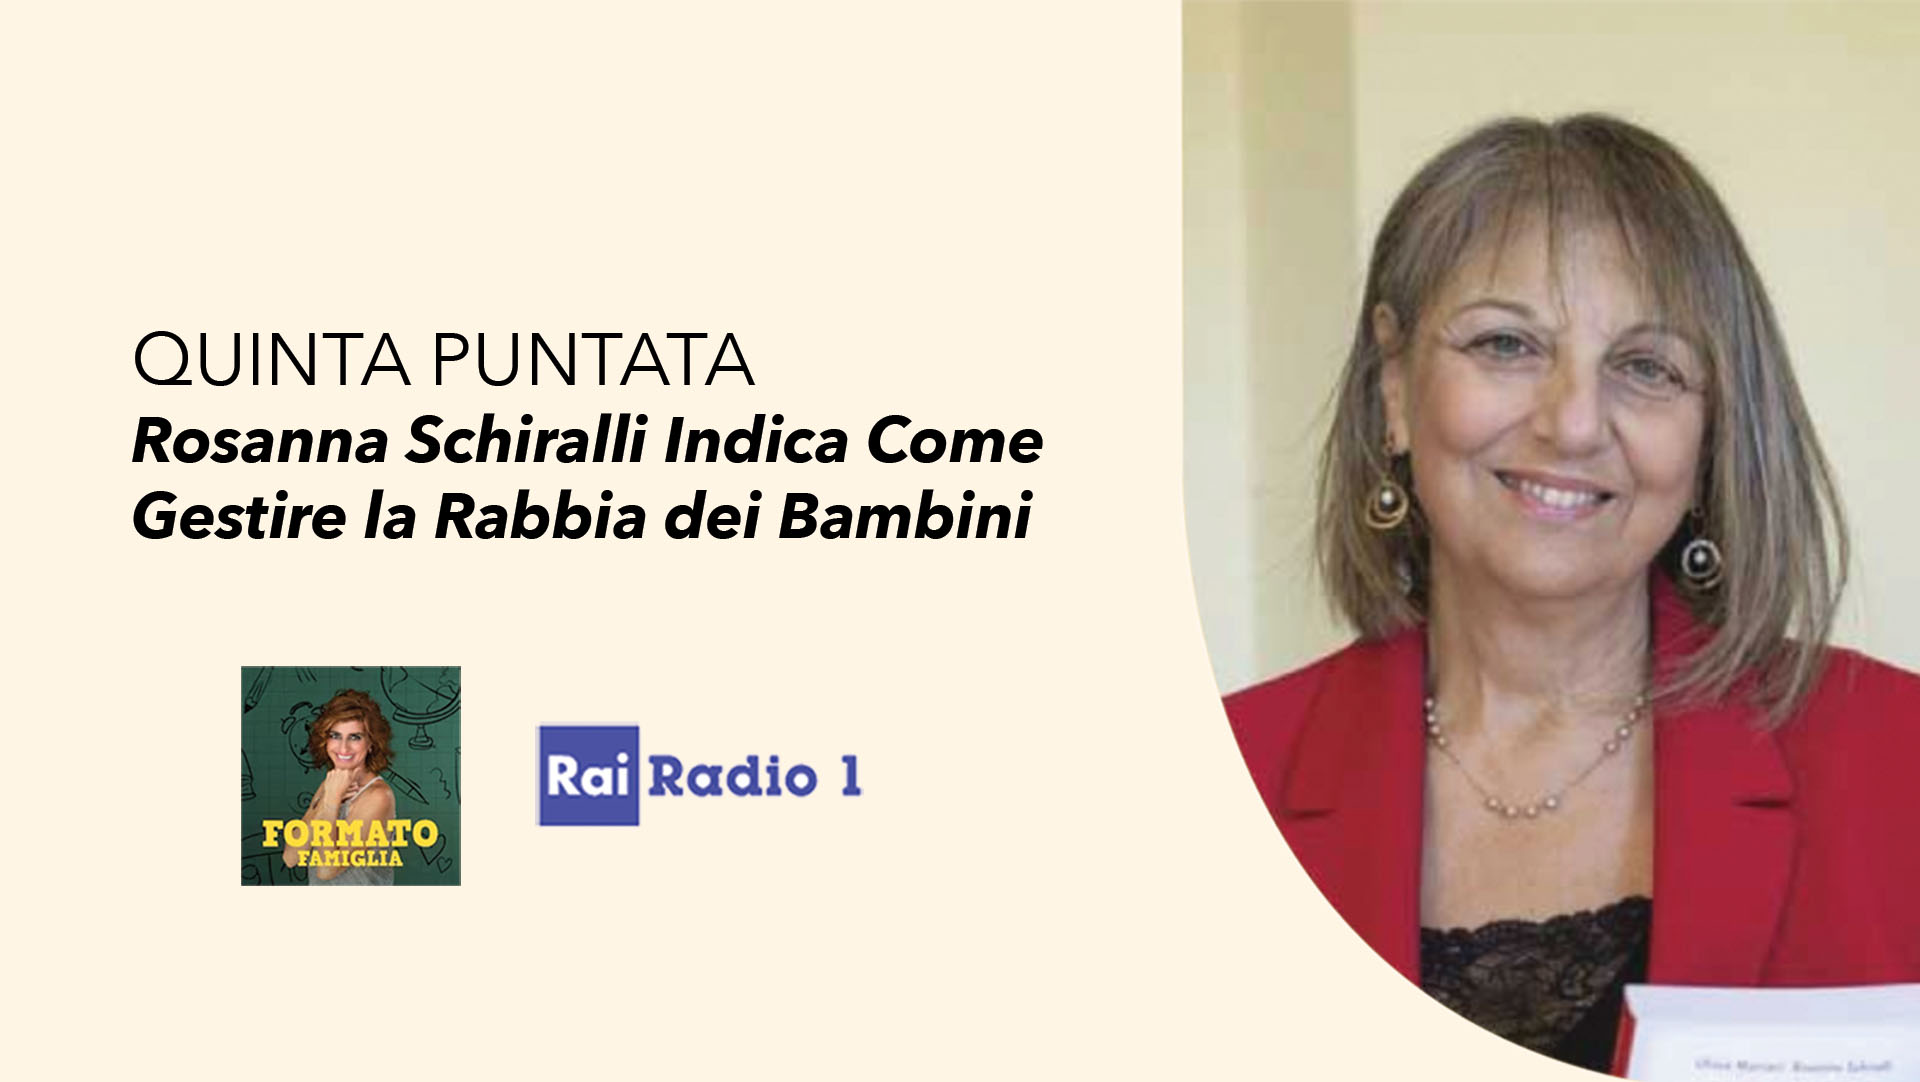 Rai Radio 1 - Formato famiglia Rosanna Schiralli indica come gestire la rabbia dei bambini